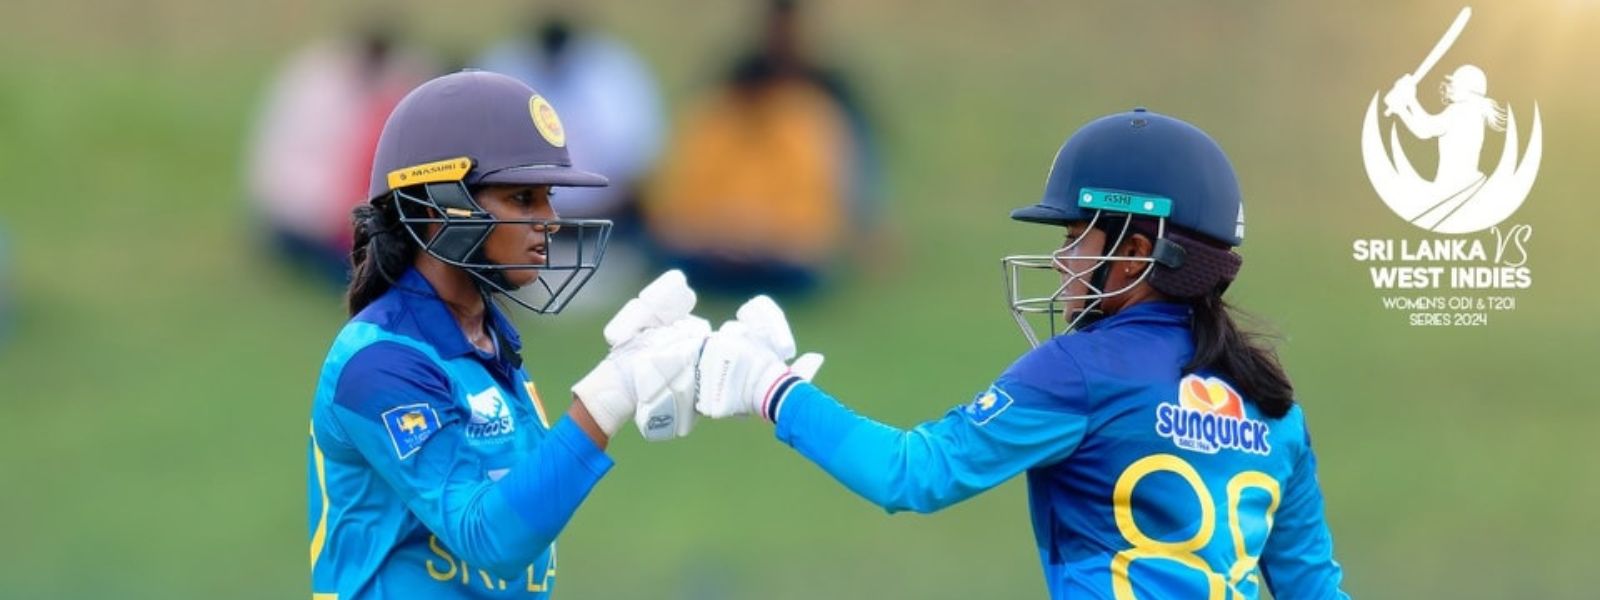 Sri Lanka Women beat West Indies by 4 wickets